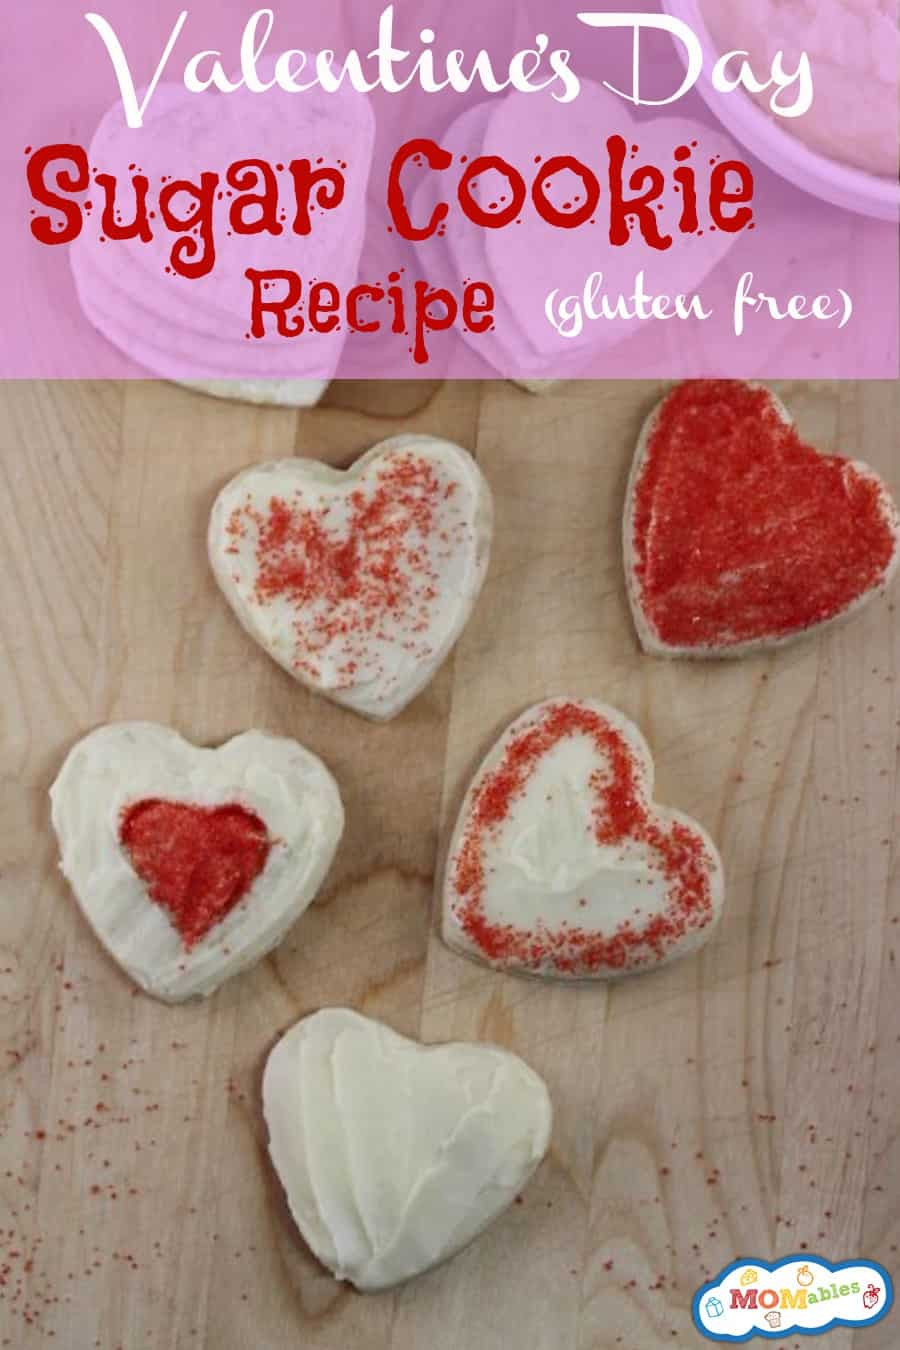 Gluten Free Valentine Day Recipes
 Gluten Free Valentine s Day Sugar Cookies Recipe